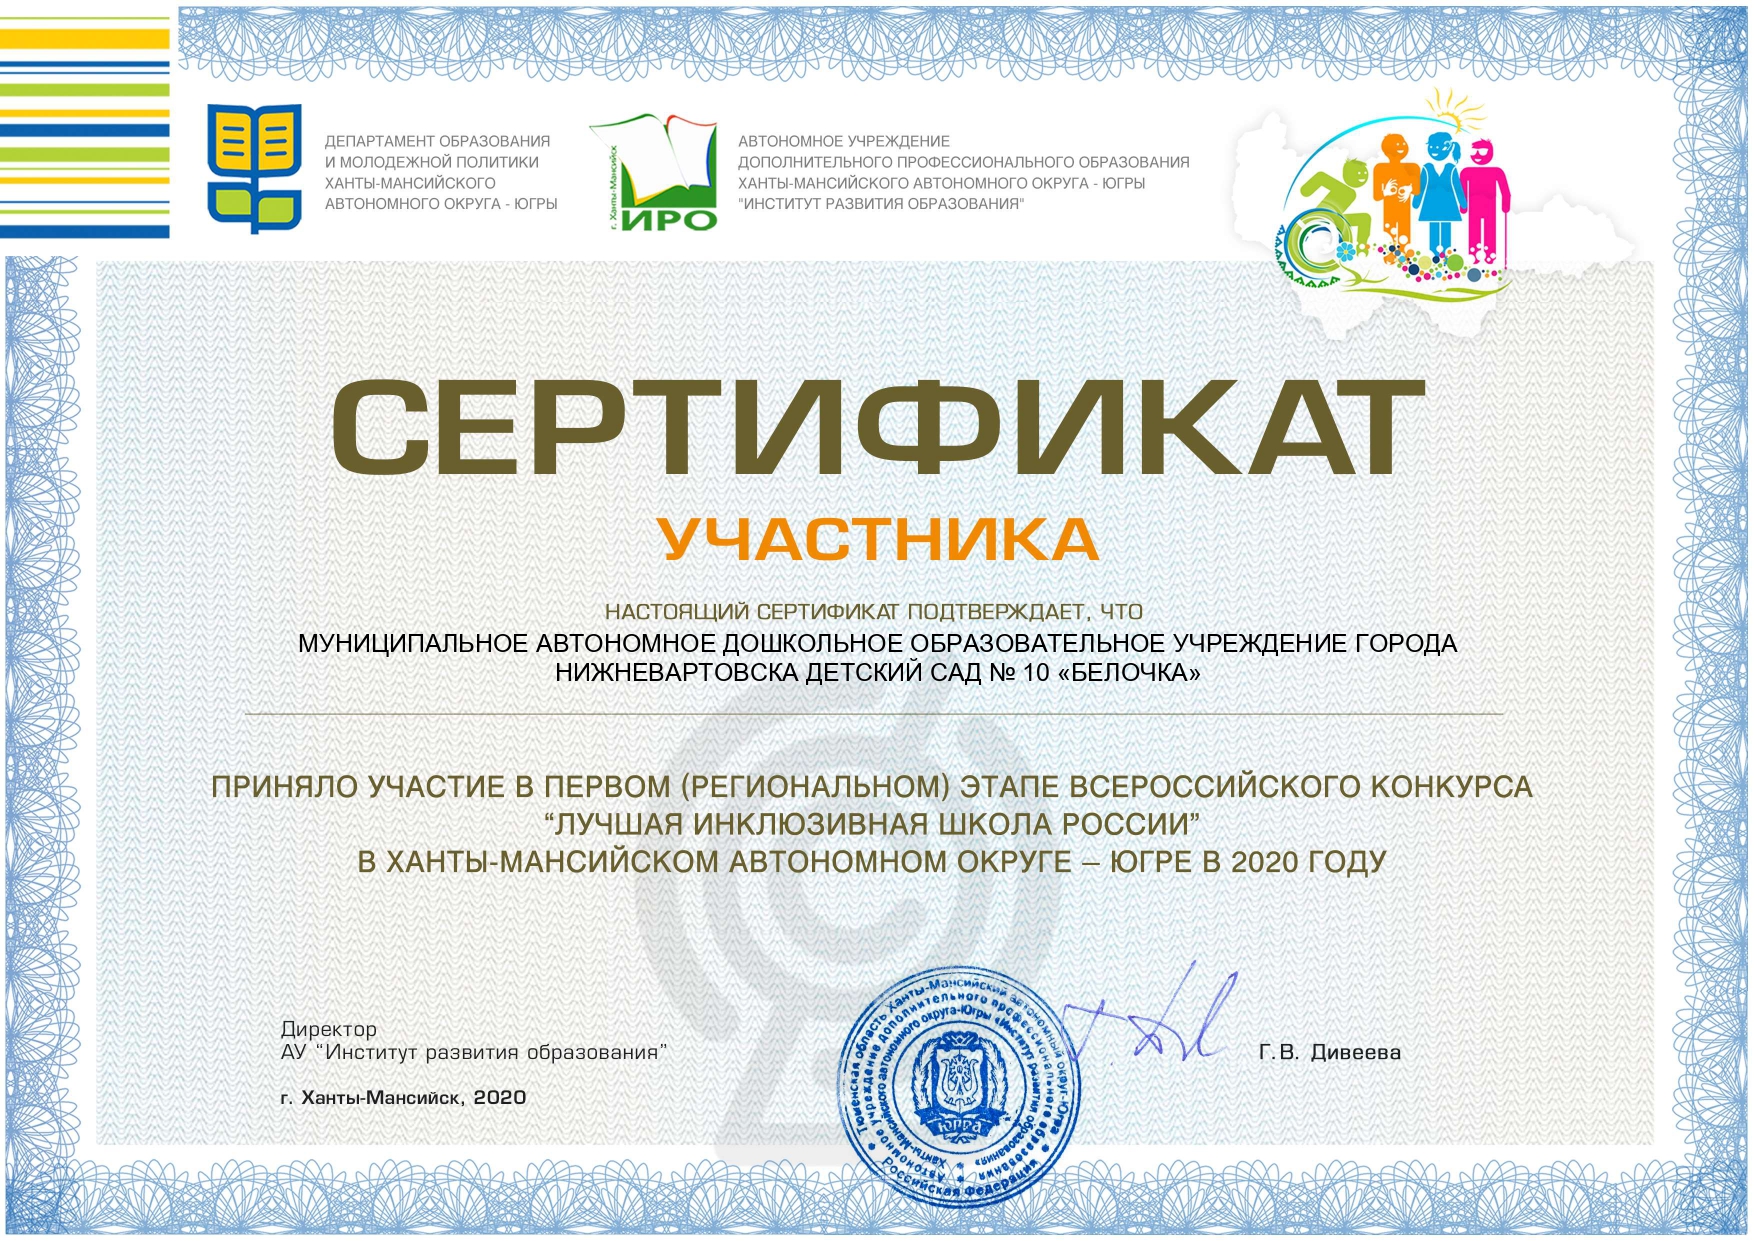 Сертификат 14 page 0001